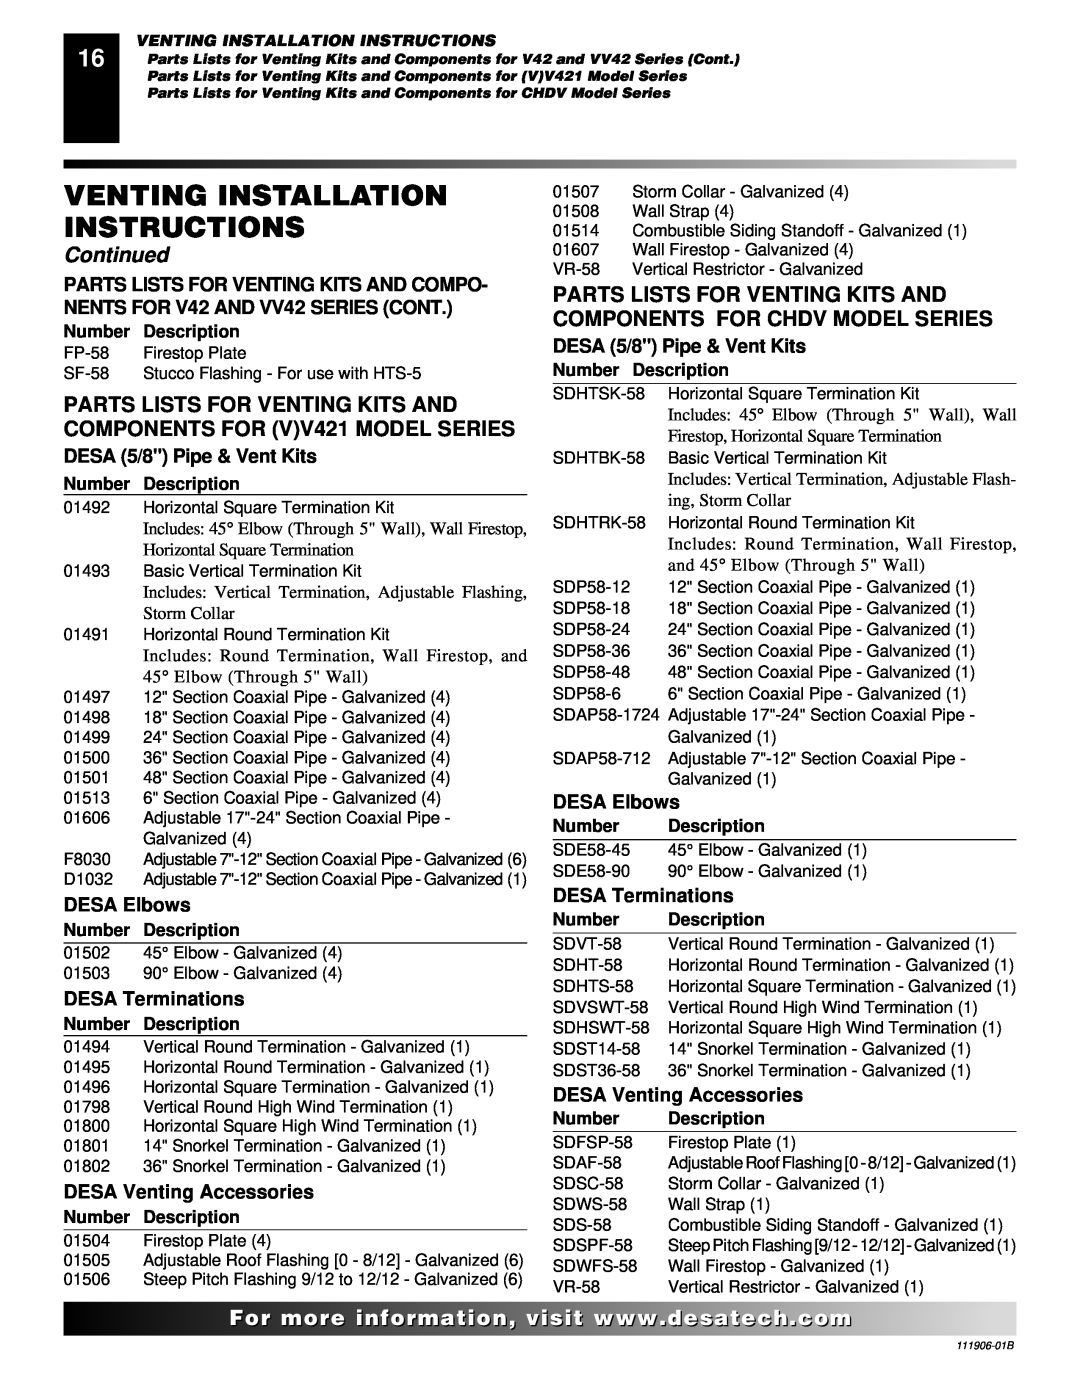 Desa (V)V42PA(1) Venting Installation Instructions, Continued, DESA 5/8 Pipe & Vent Kits, DESA Elbows, DESA Terminations 